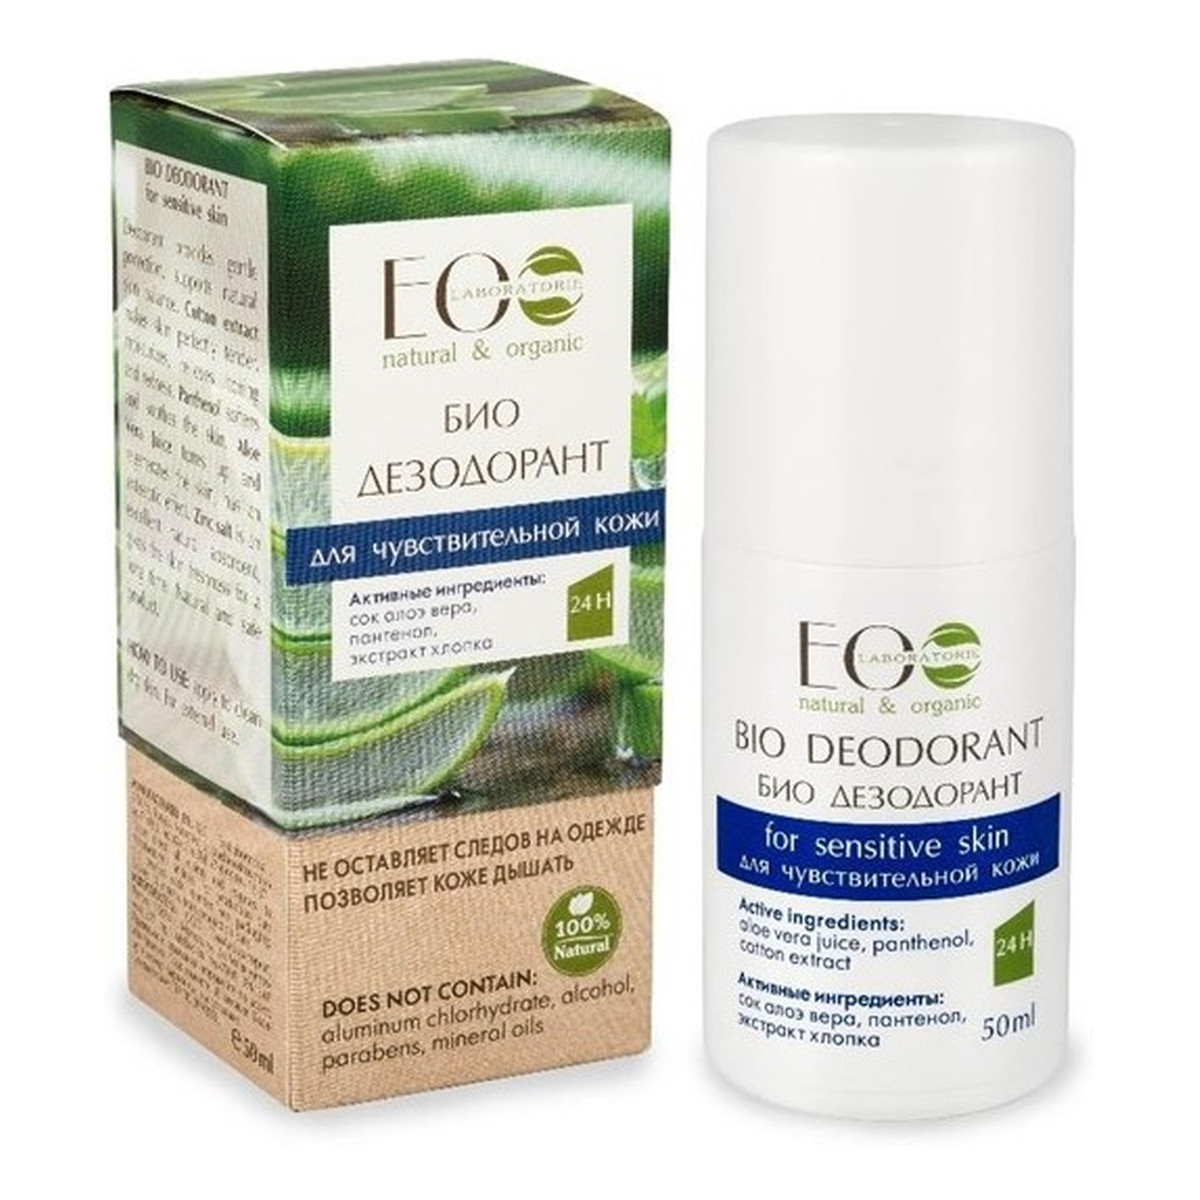 Ecolab Ec Laboratorie HYPOALERGICZNY BIO-dezodorant 50g